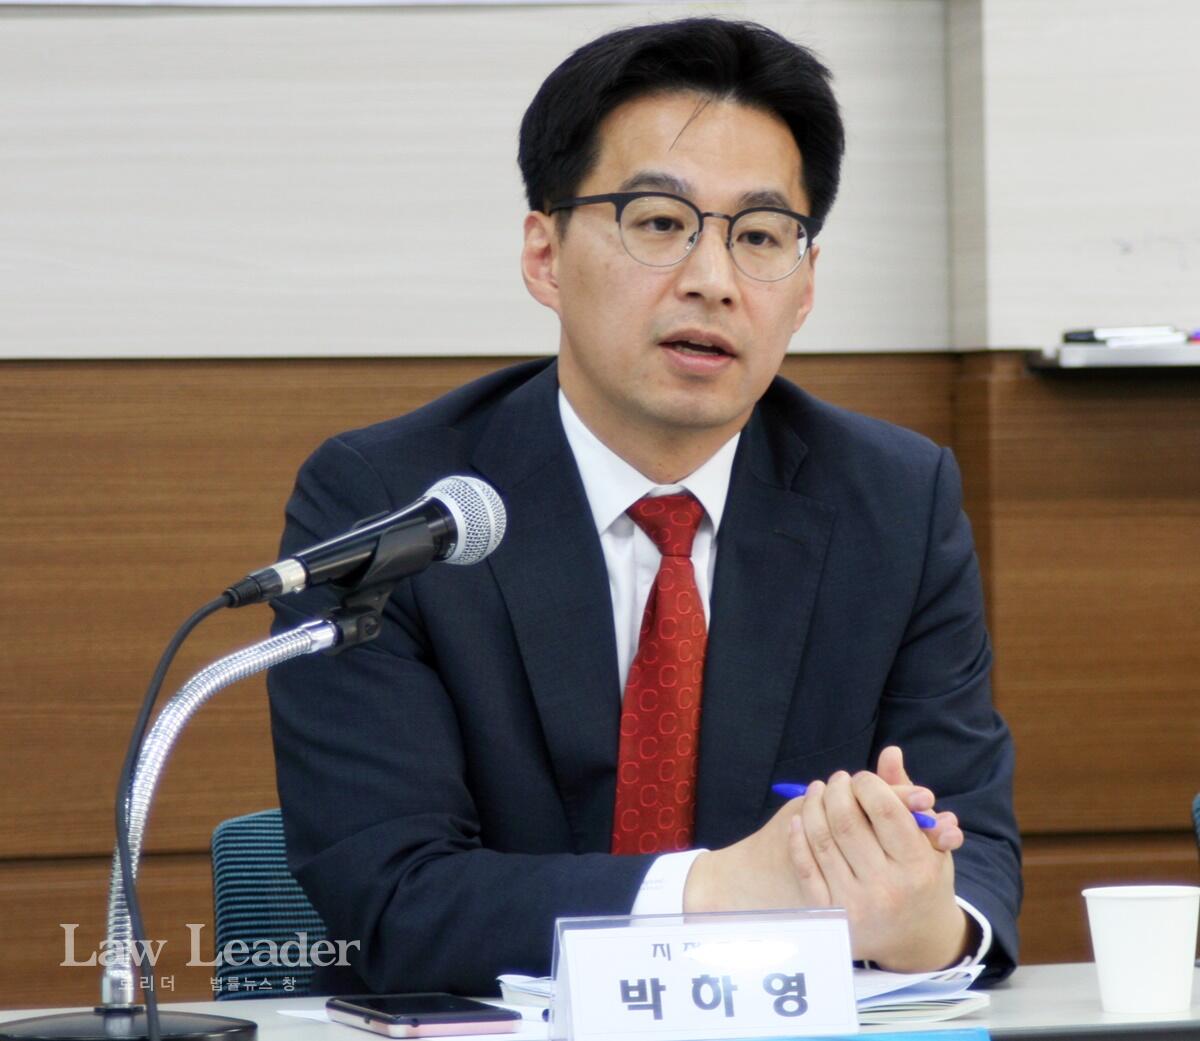 토론자로 발표하는 박하영 법무부 법무과장(부장검사)